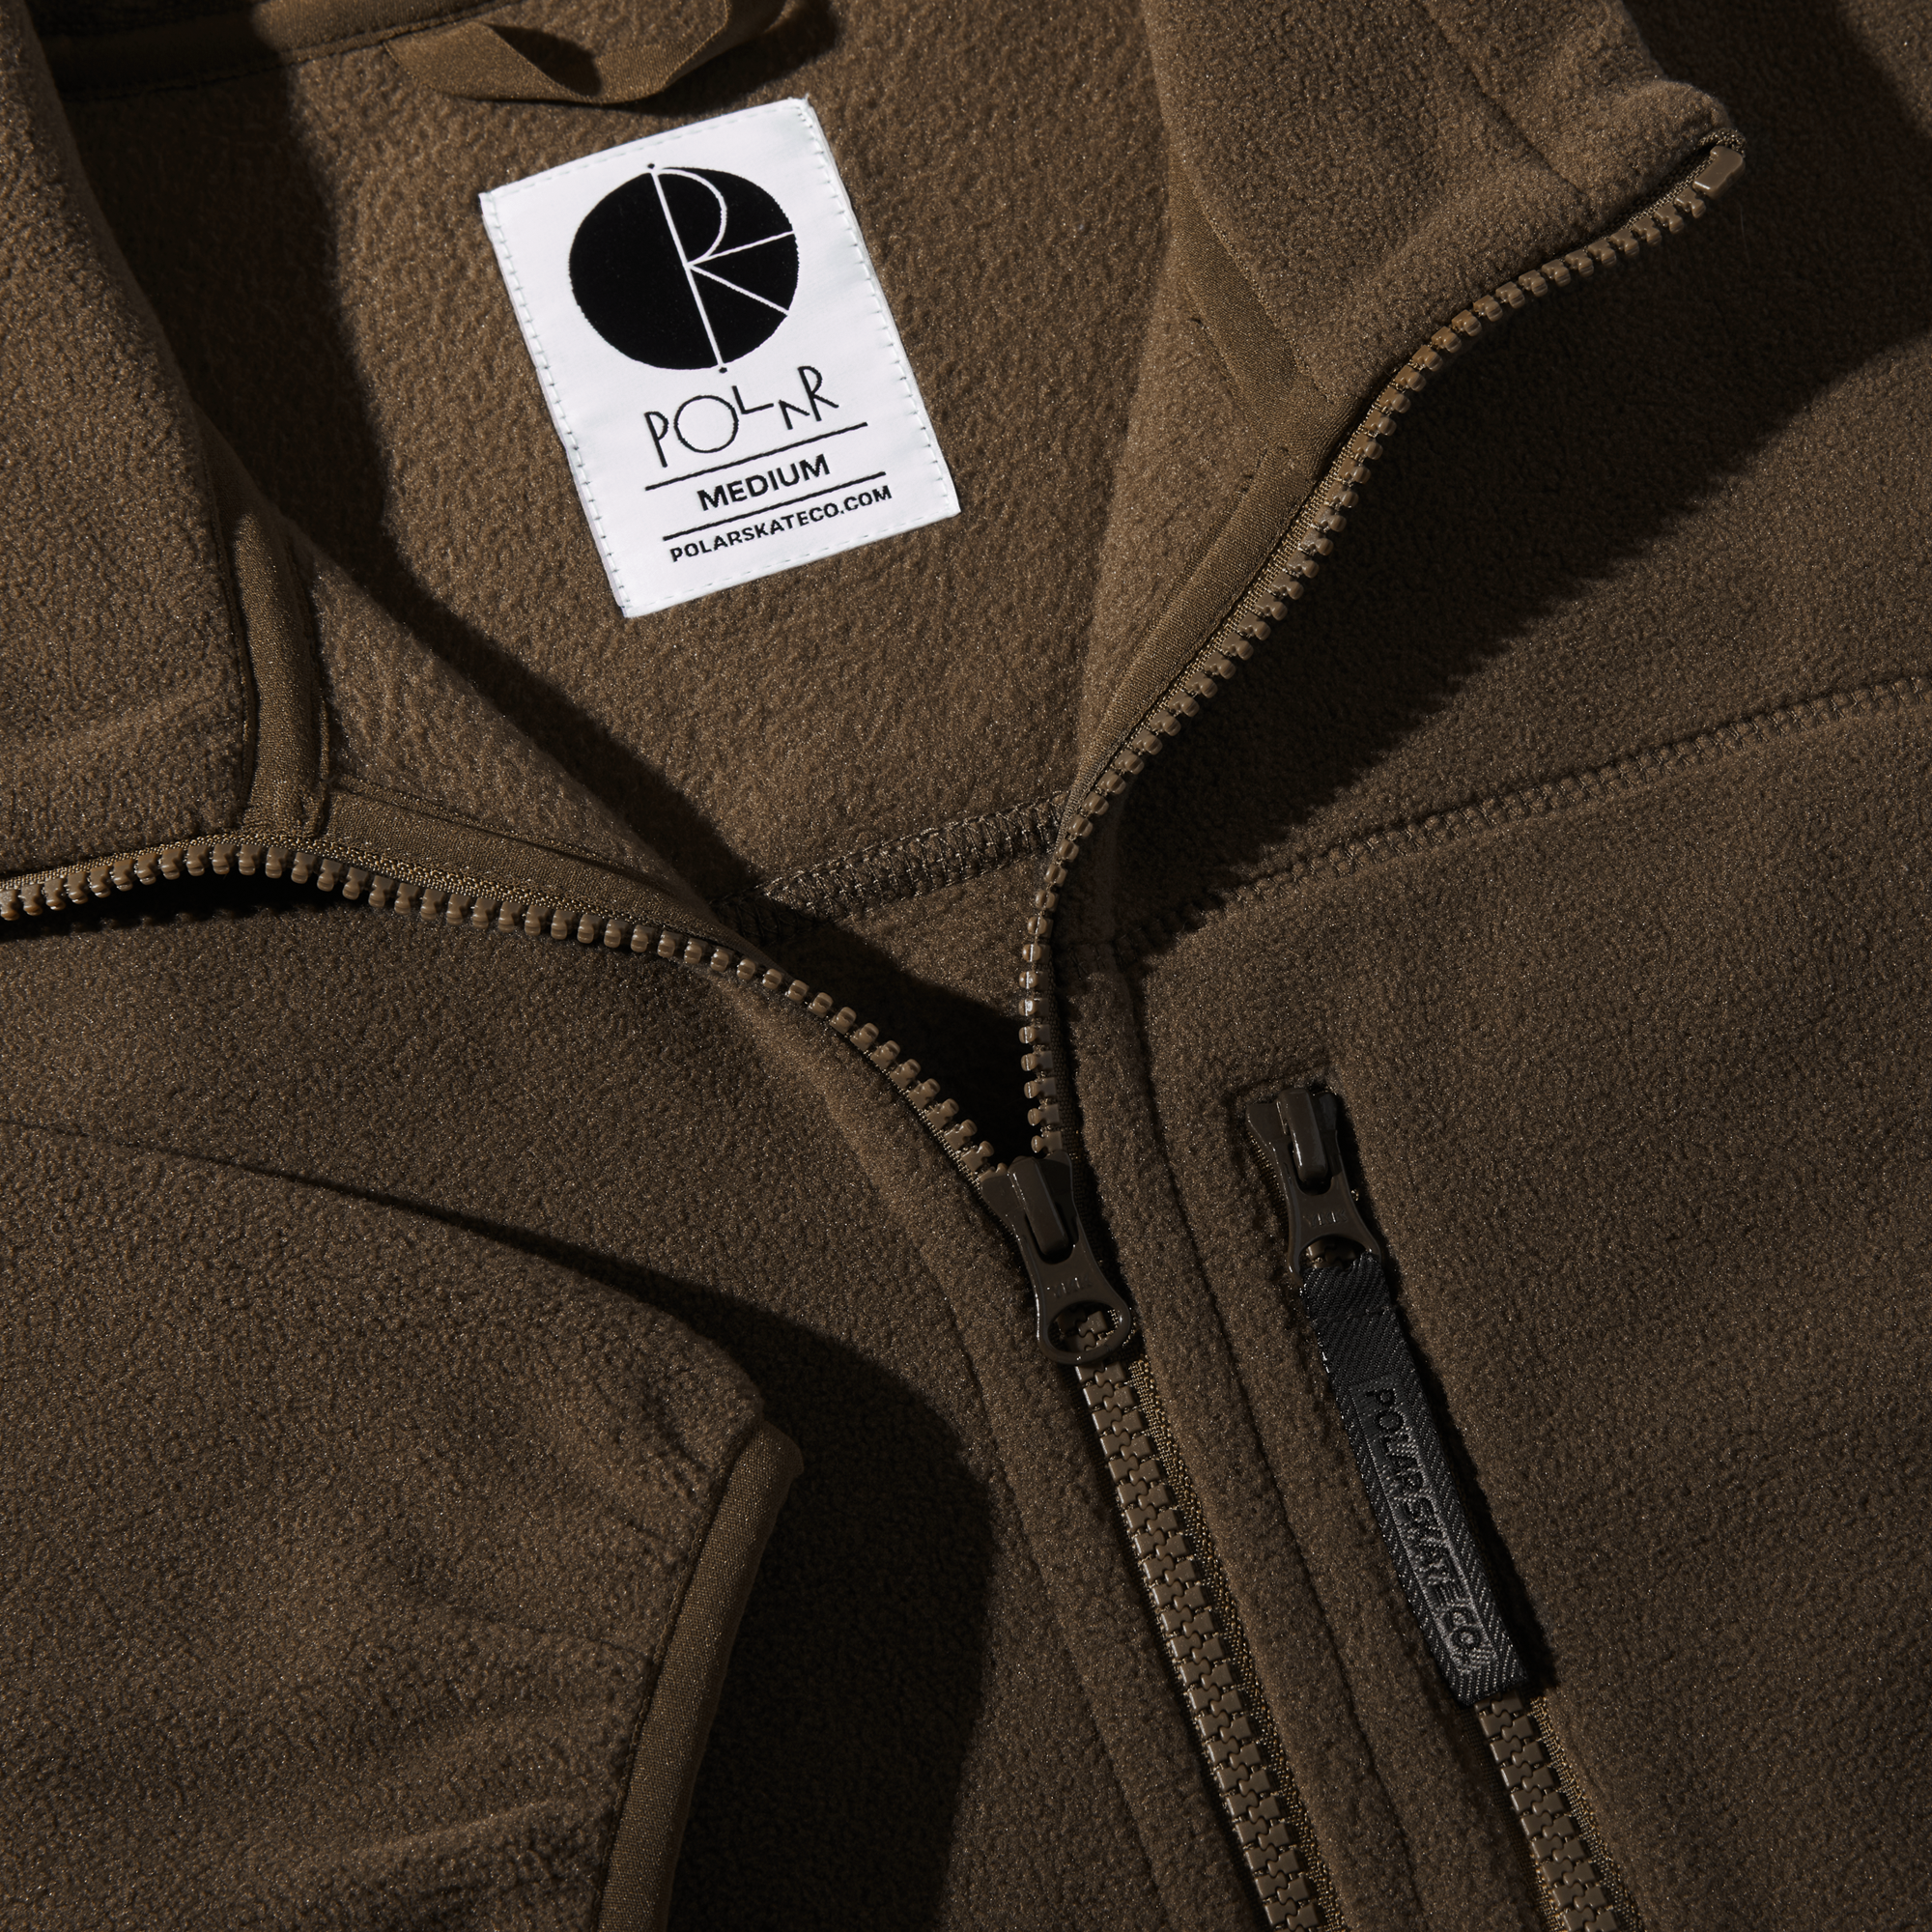 POLAR - Basic Fleece Jacket "Brown"